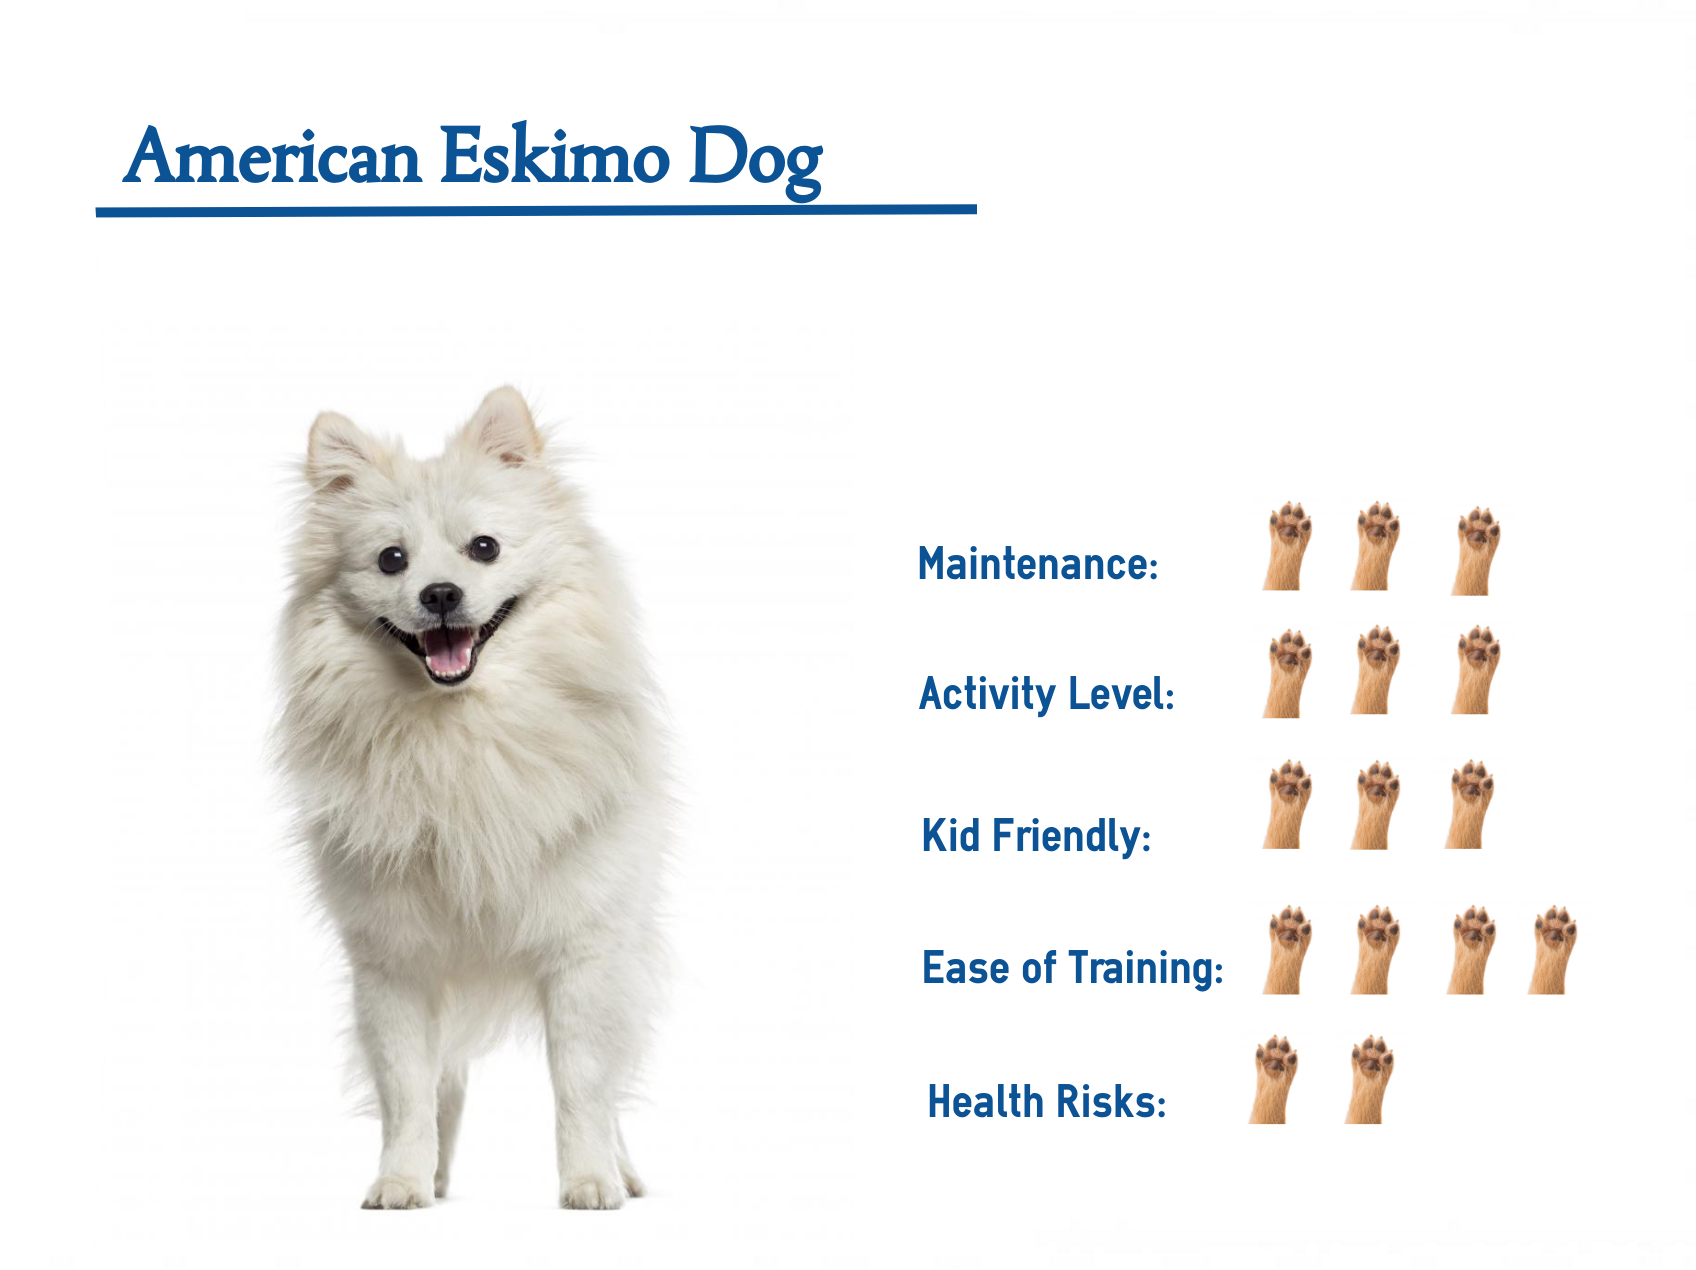 Описание породы собак американский эскимосский шпиц с фото и отзывами, тех у кого уже есть эта собака